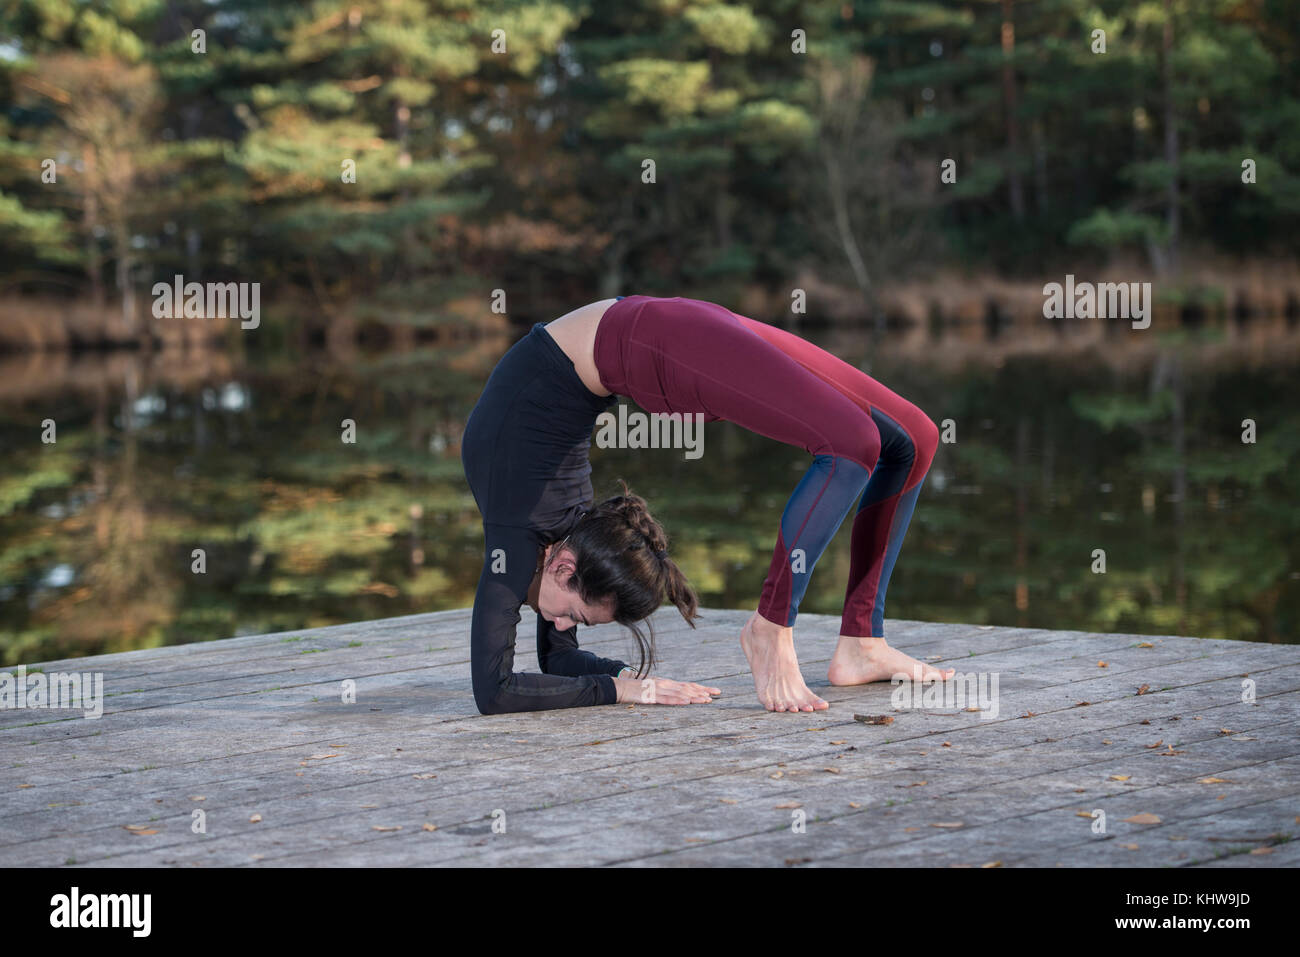 Mujer practicando yoga por un lago haciendo un puente pose. Foto de stock